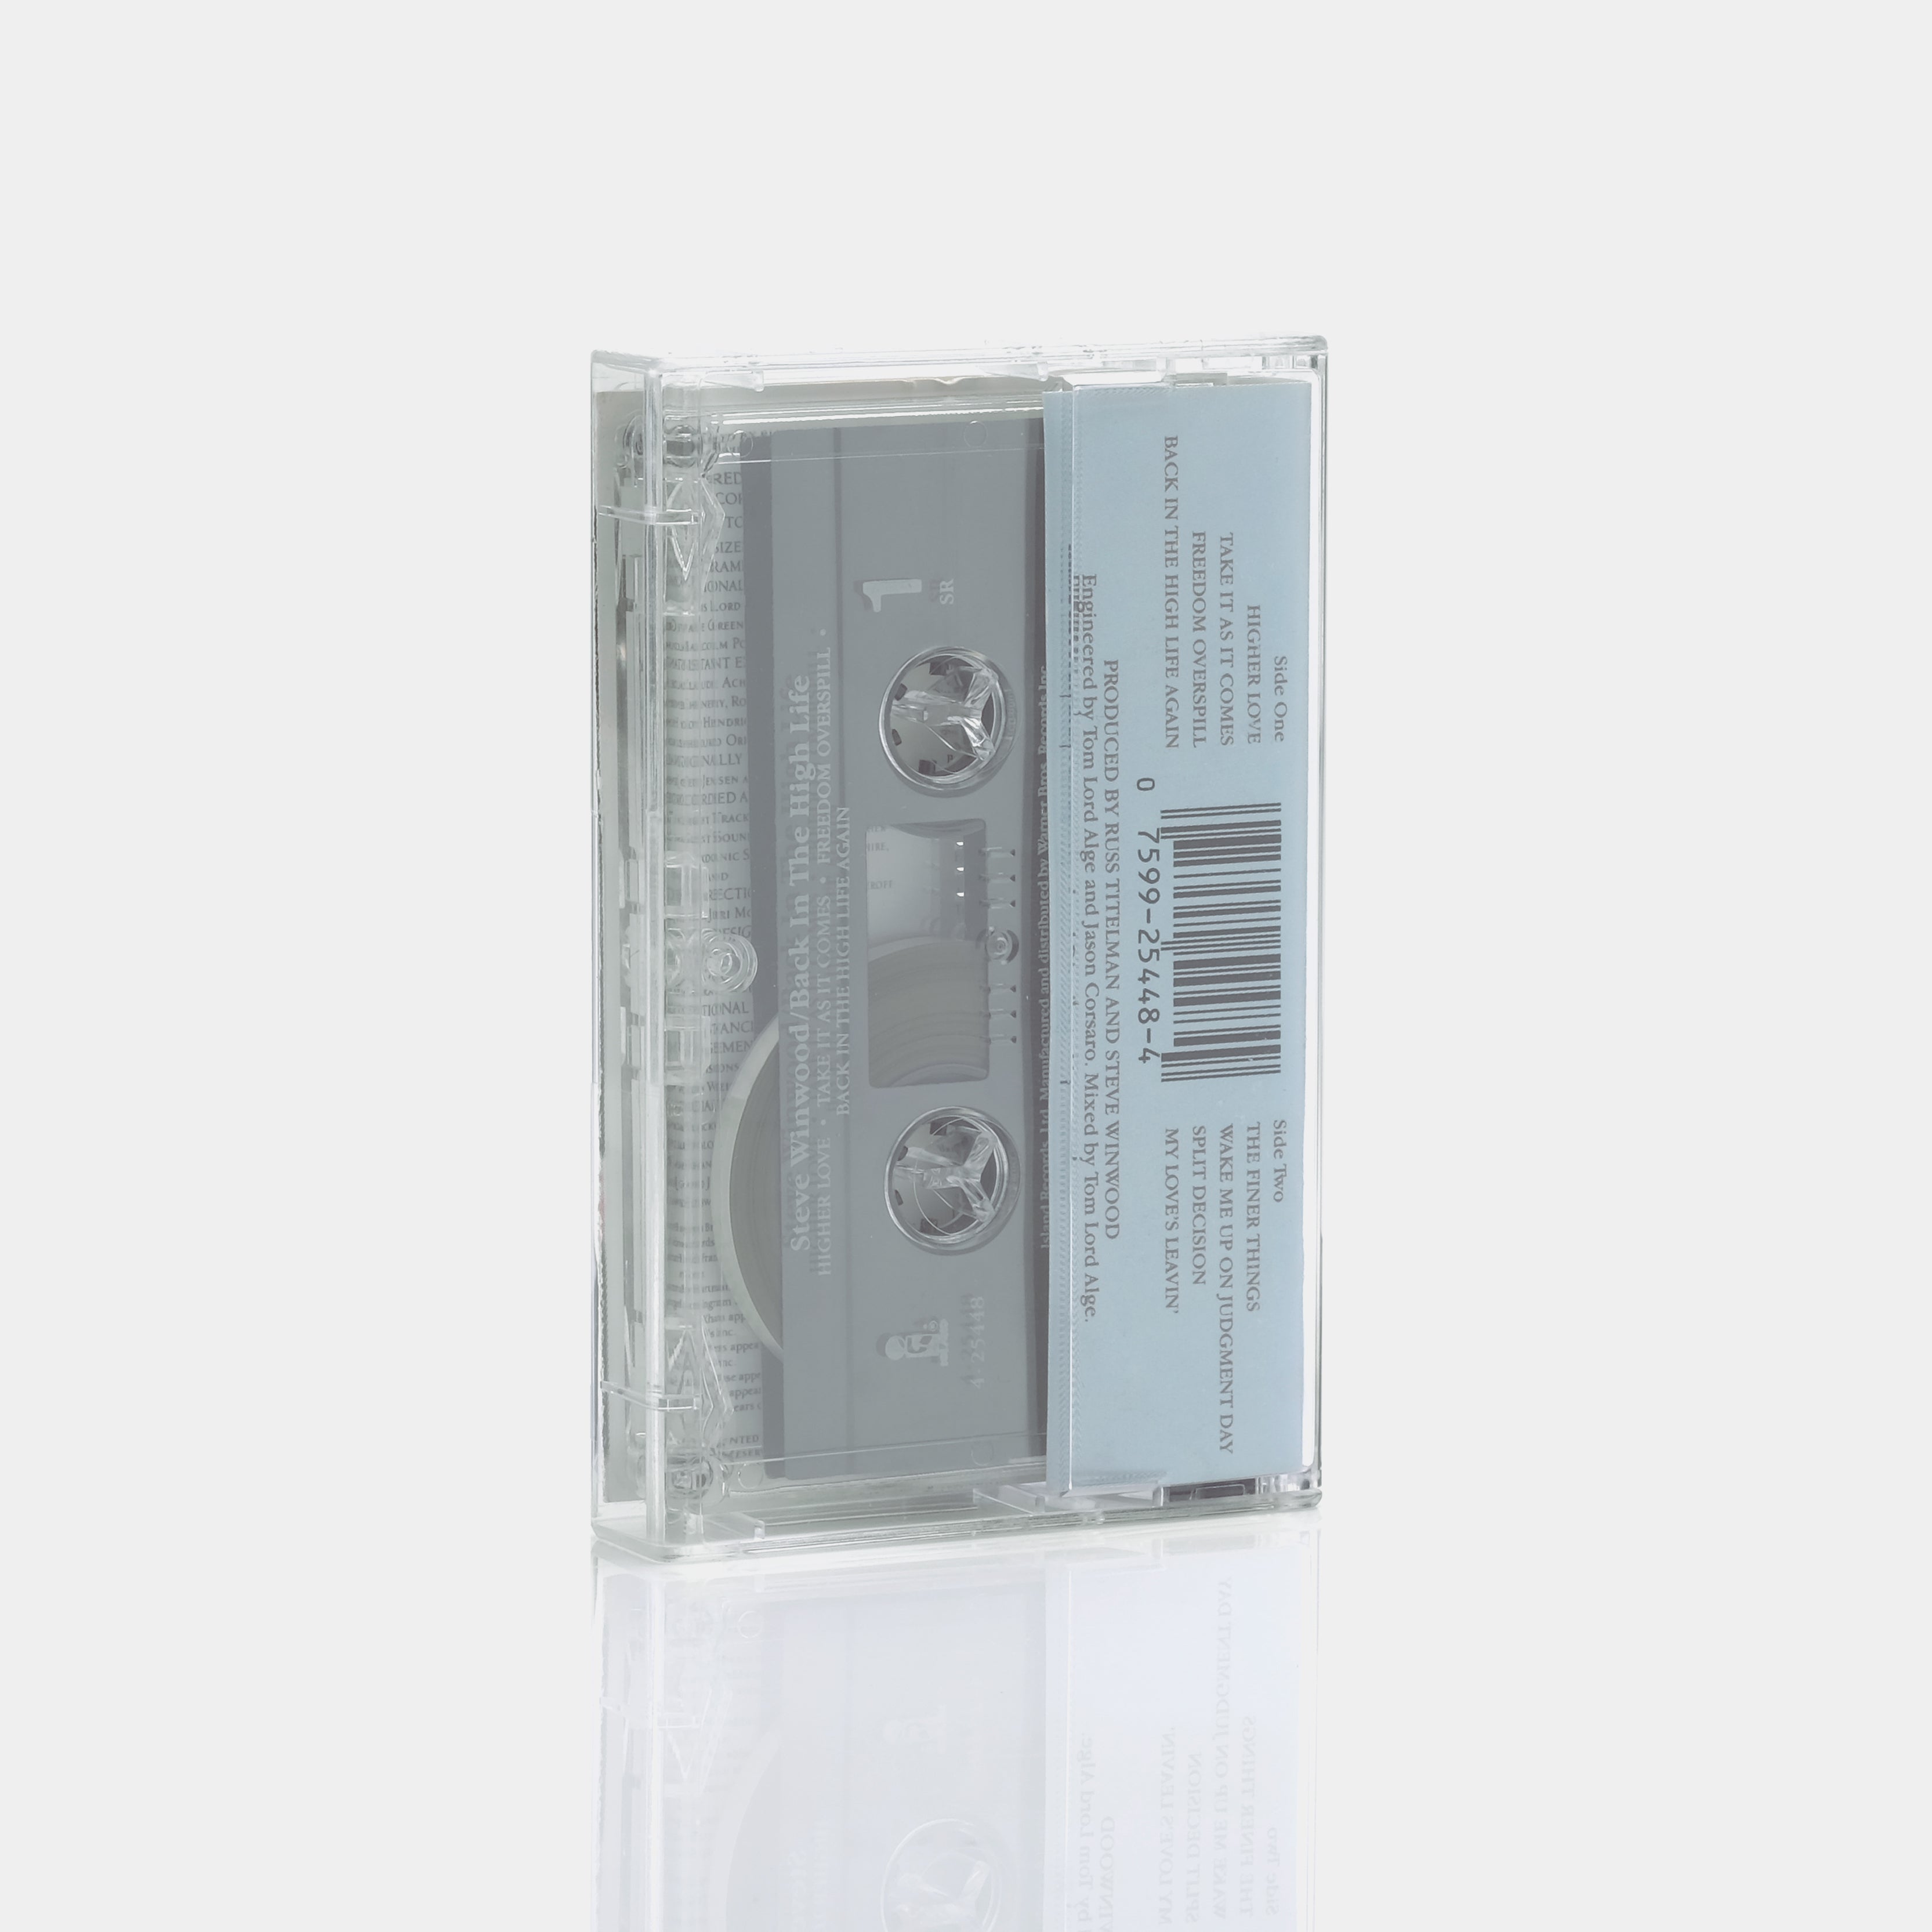 Steve Winwood - Back In The High Life Cassette Tape